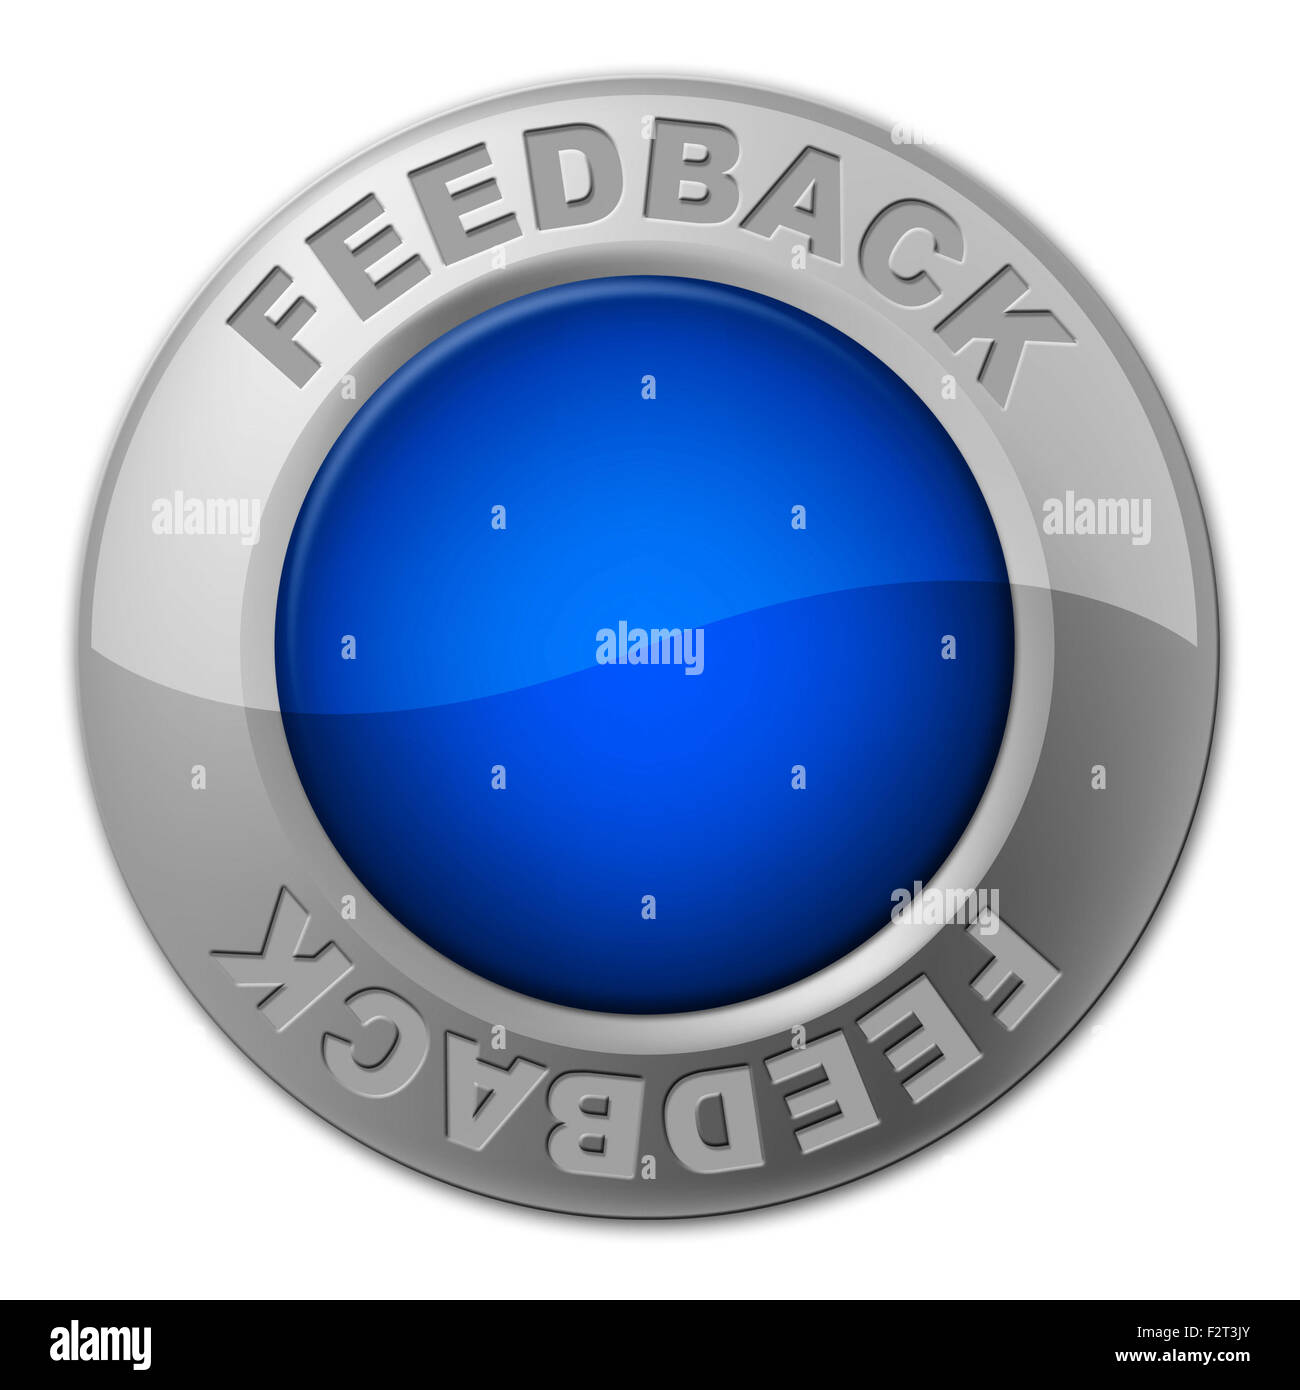 Feedback-Button vertreten Meinung Bewertung und Vermessung Stockfoto